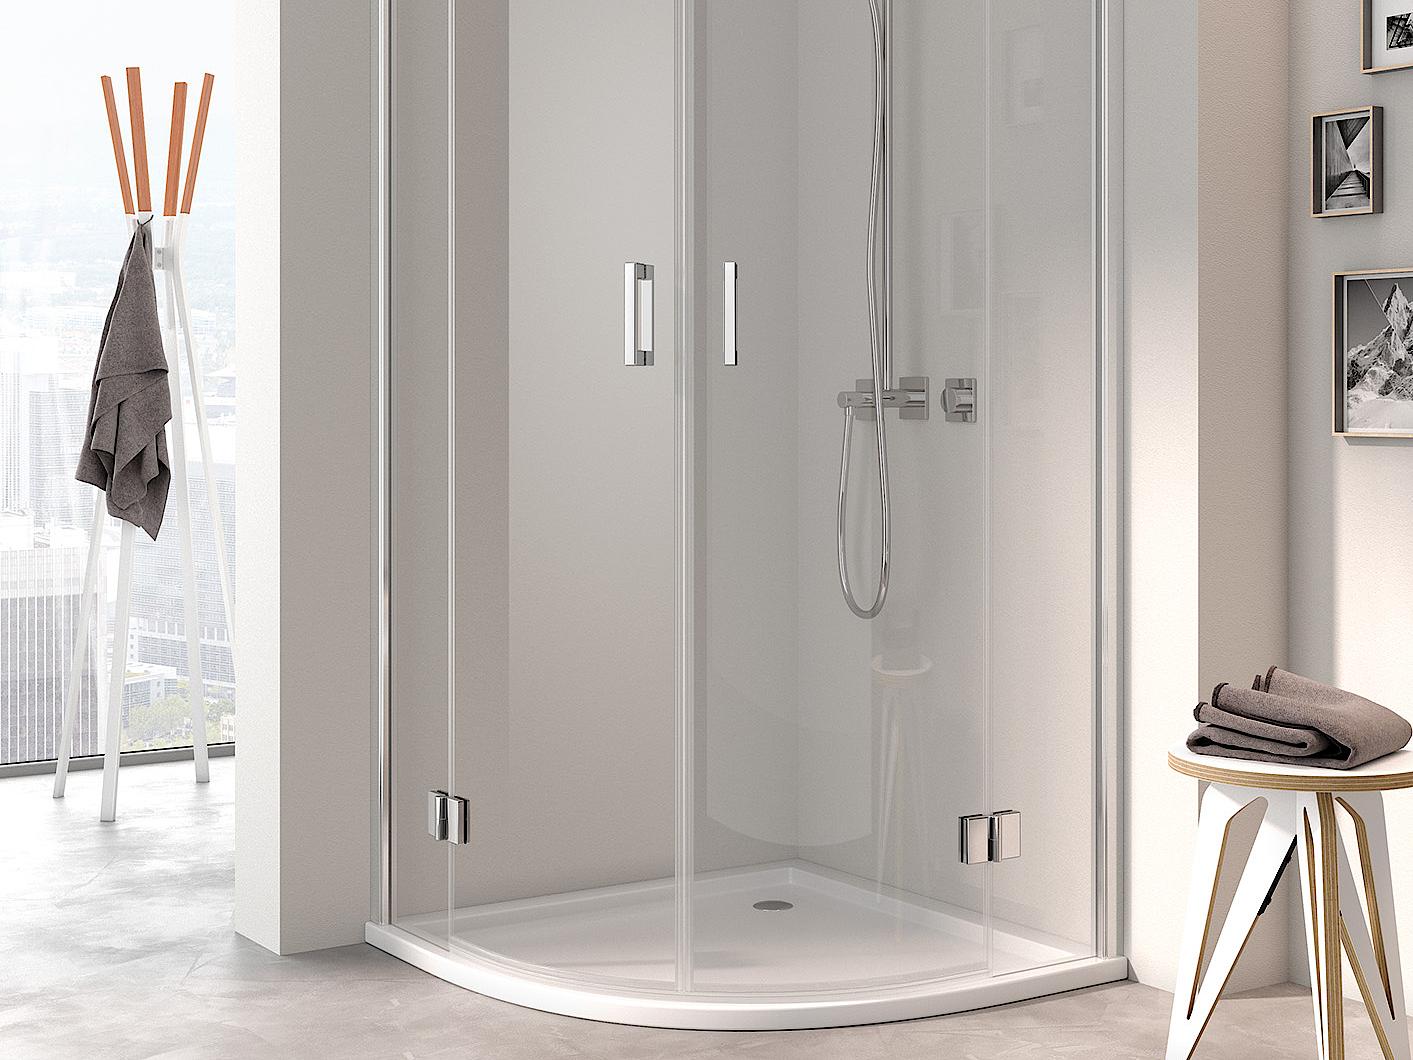 Pantový sprchový kout Kermi OSIA Čtvrtkruhový sprchový kout (otočné dveře s pevnými poli)